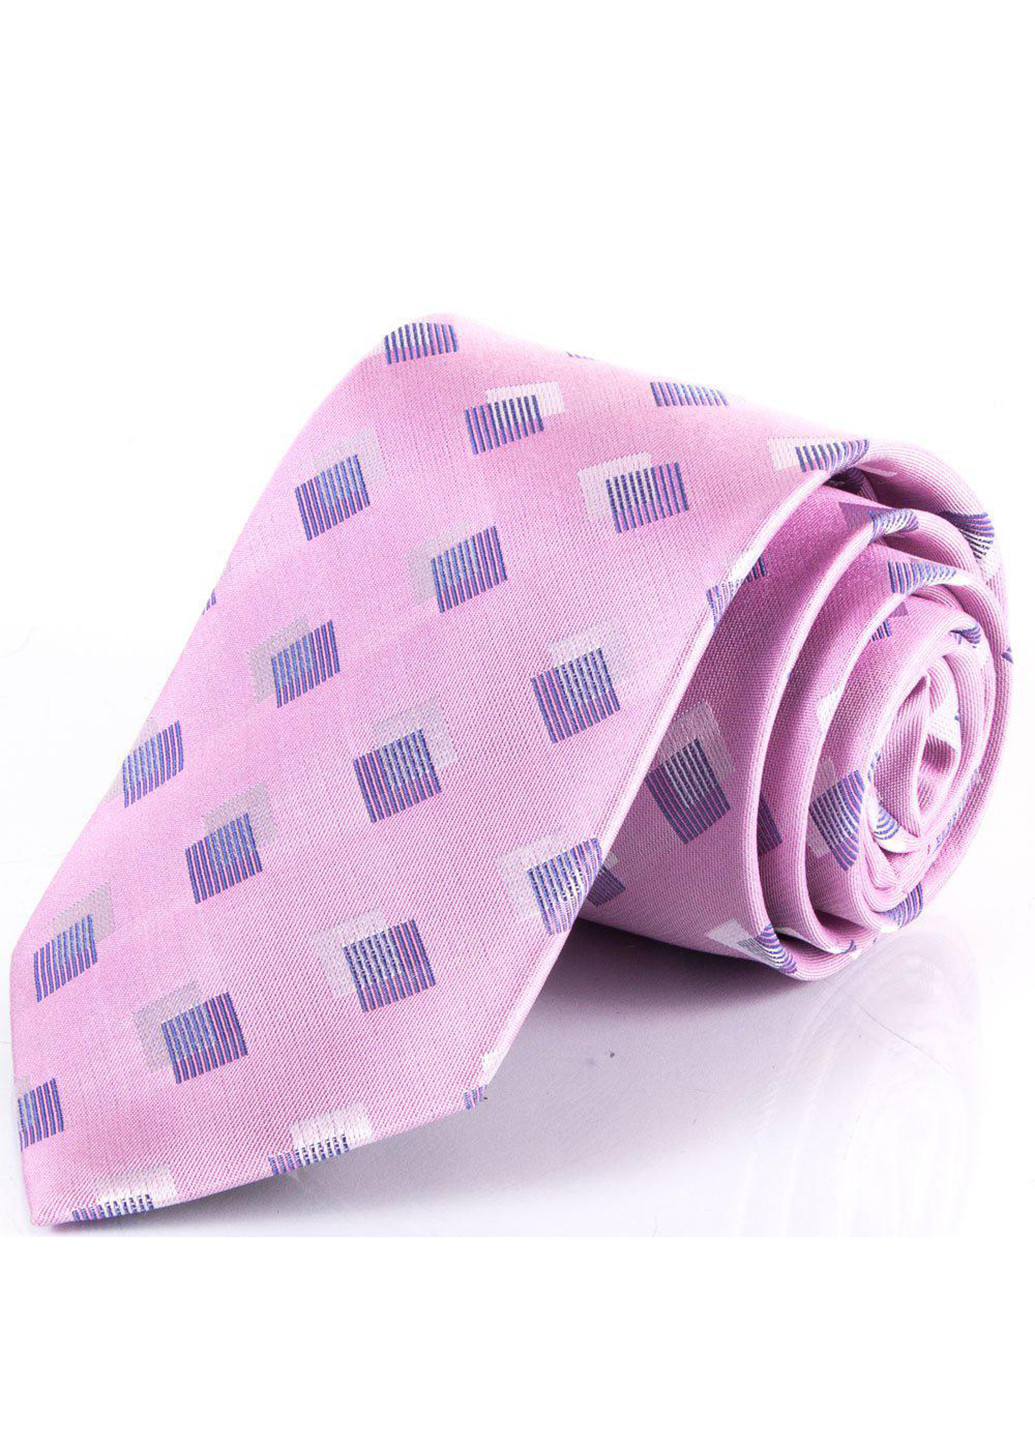 Мужской шелковый галстук 150 см Schonau & Houcken (252130213)